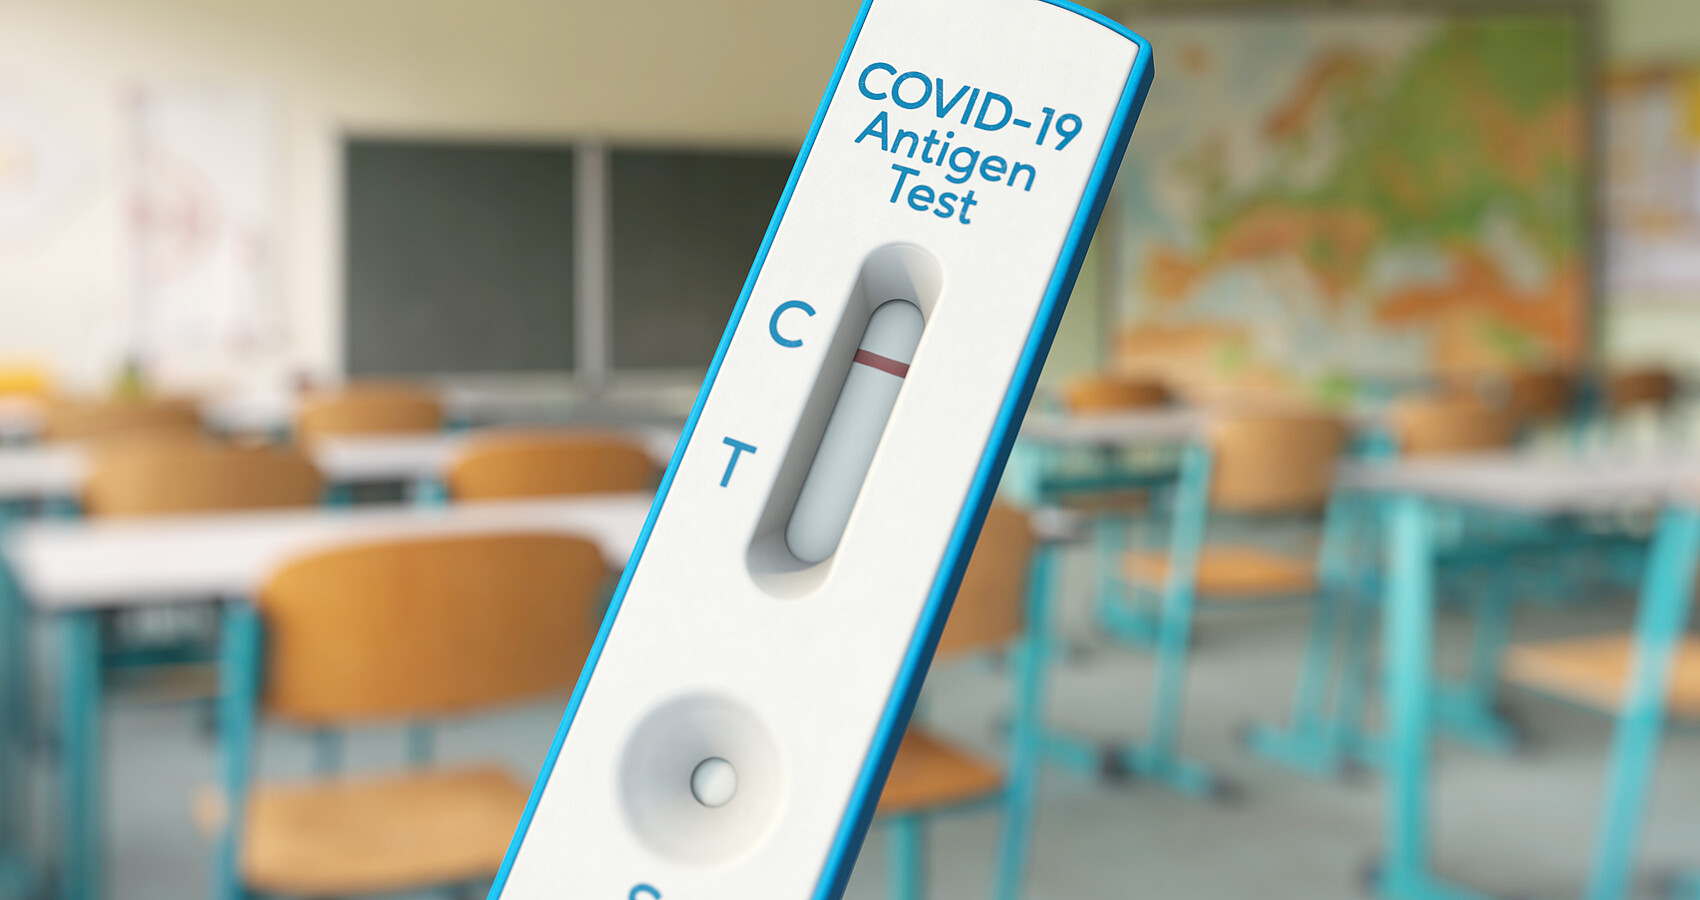 Corona-Test im Vordergrund des Bildes; im Hintergrund ist ein leeres Klassenzimmer zu sehen